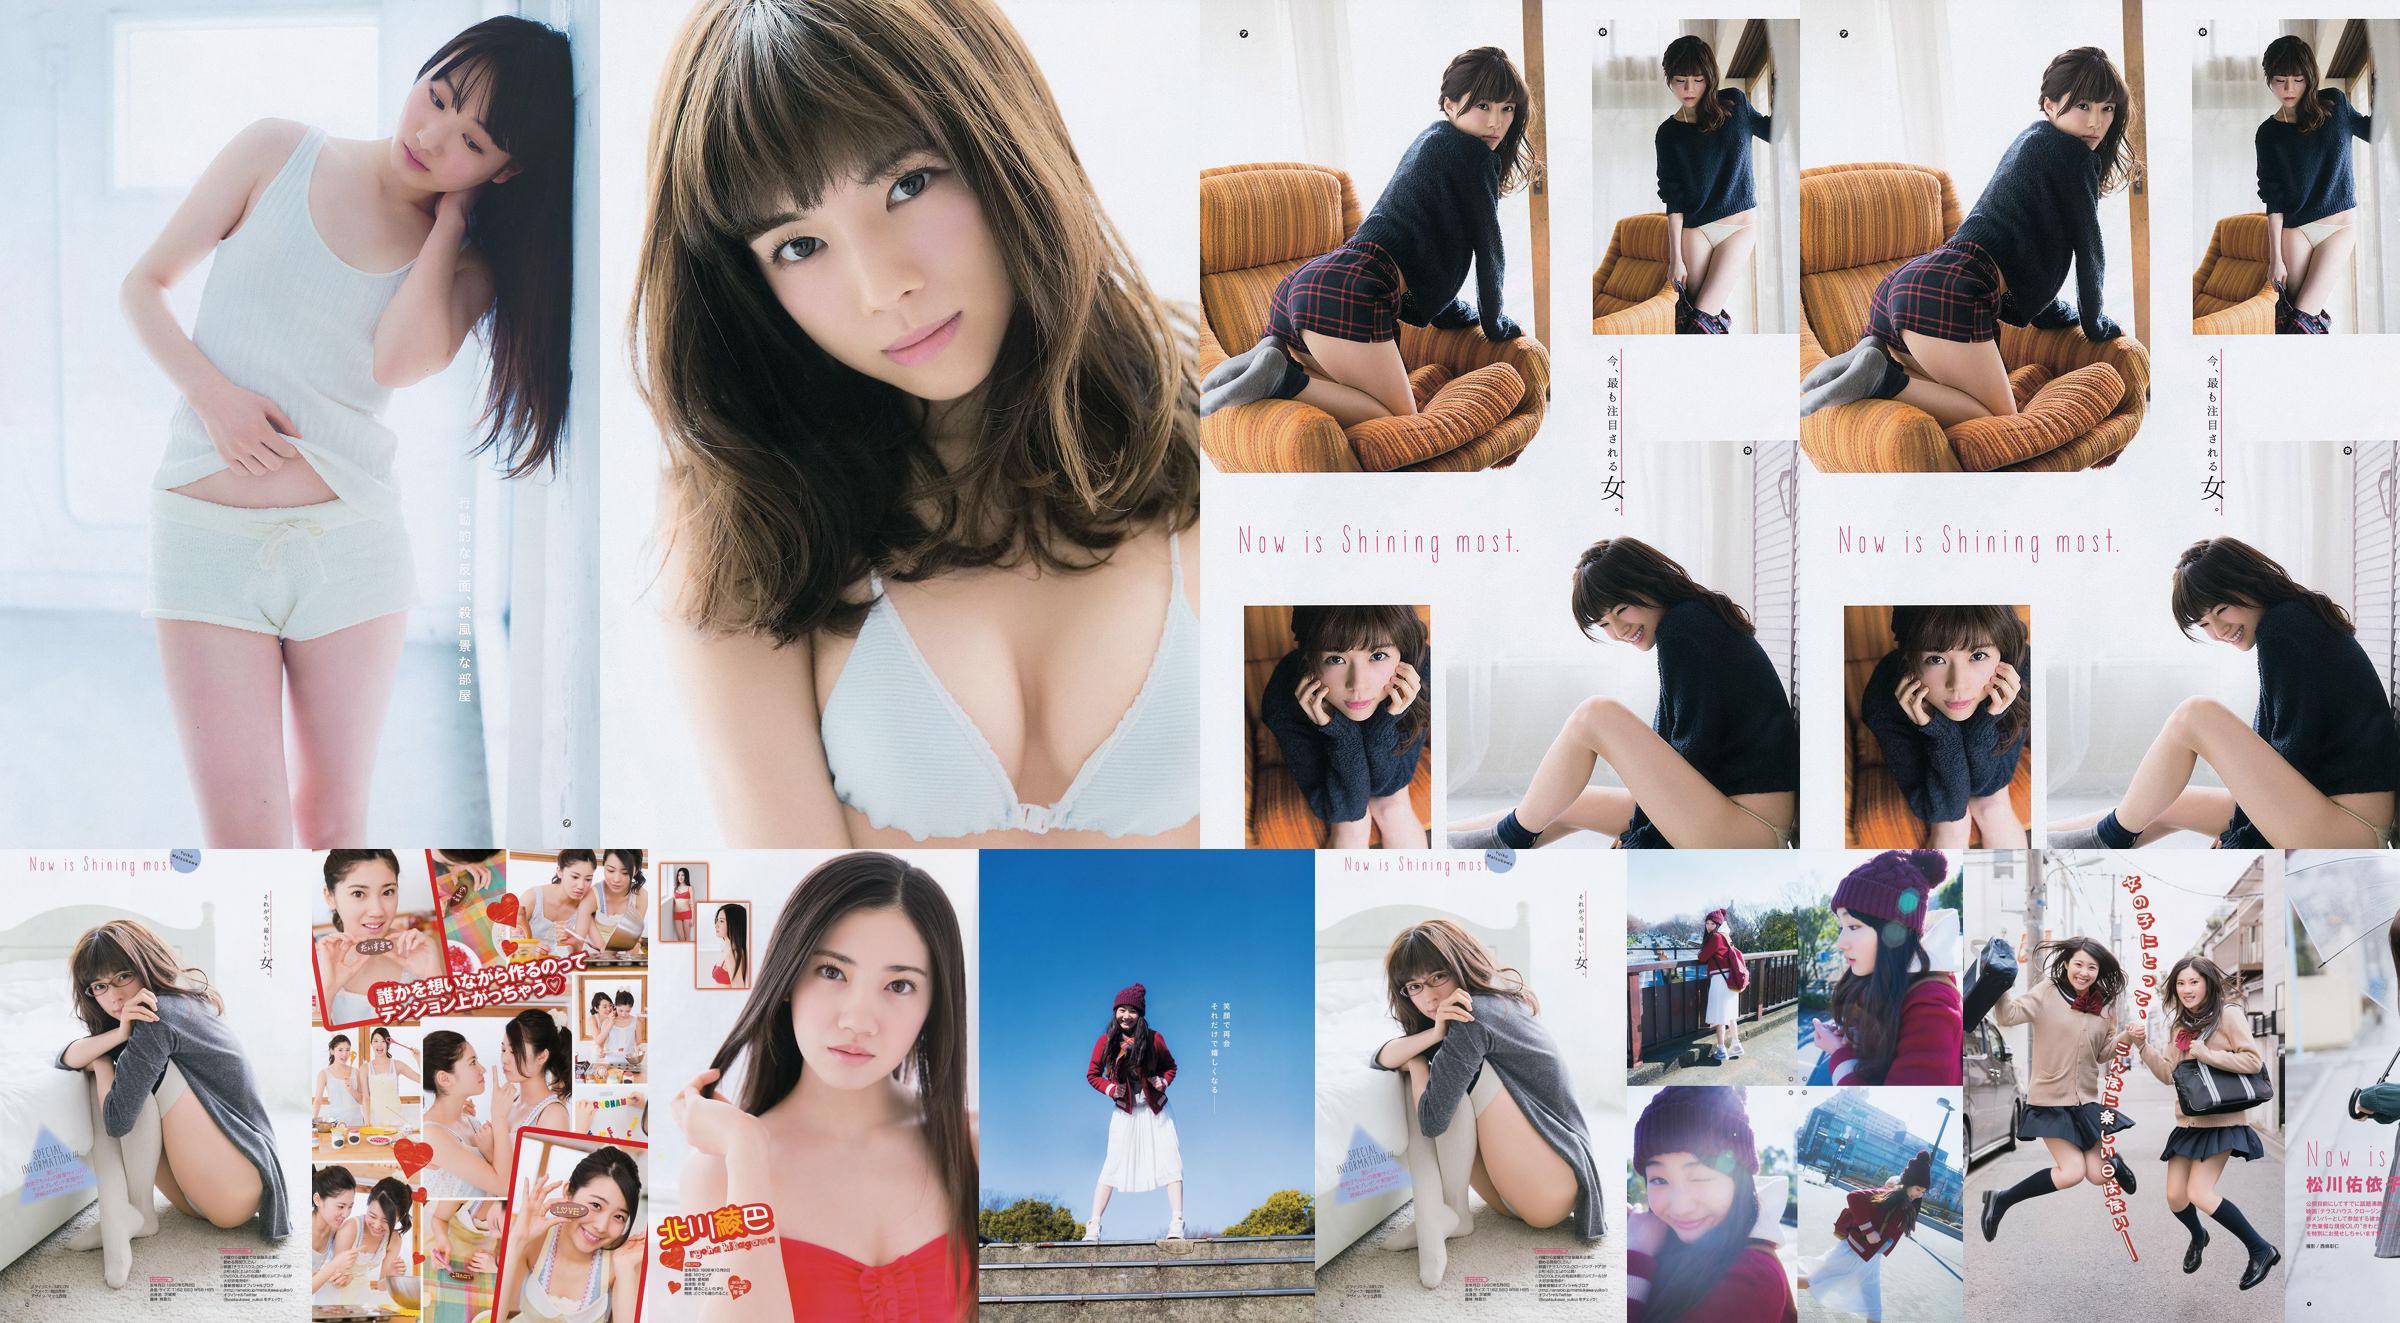 [Young Gangan] Ryoha Kitagawa Ami Miyamae Yuiko Matsukawa Narumi Akizuki 2015 Fotografia No.04 No.158dae Página 1